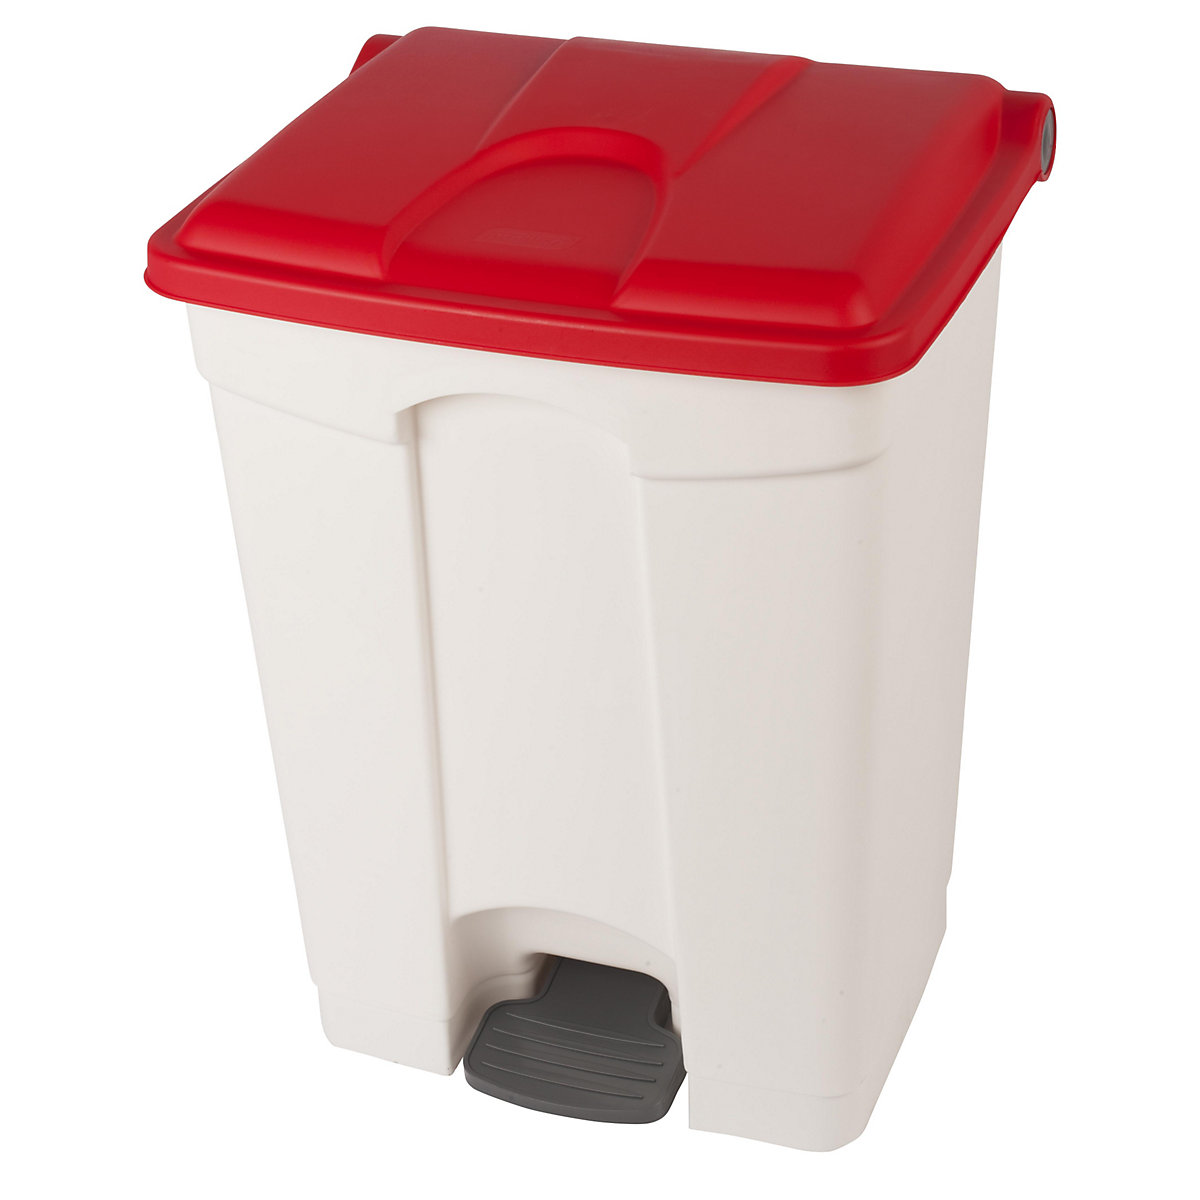 Spremnik za otpad s papučicom, volumen 70 l, ŠxVxD 505 x 675 x 415 mm, u bijeloj boji, poklopac u crvenoj boji-11